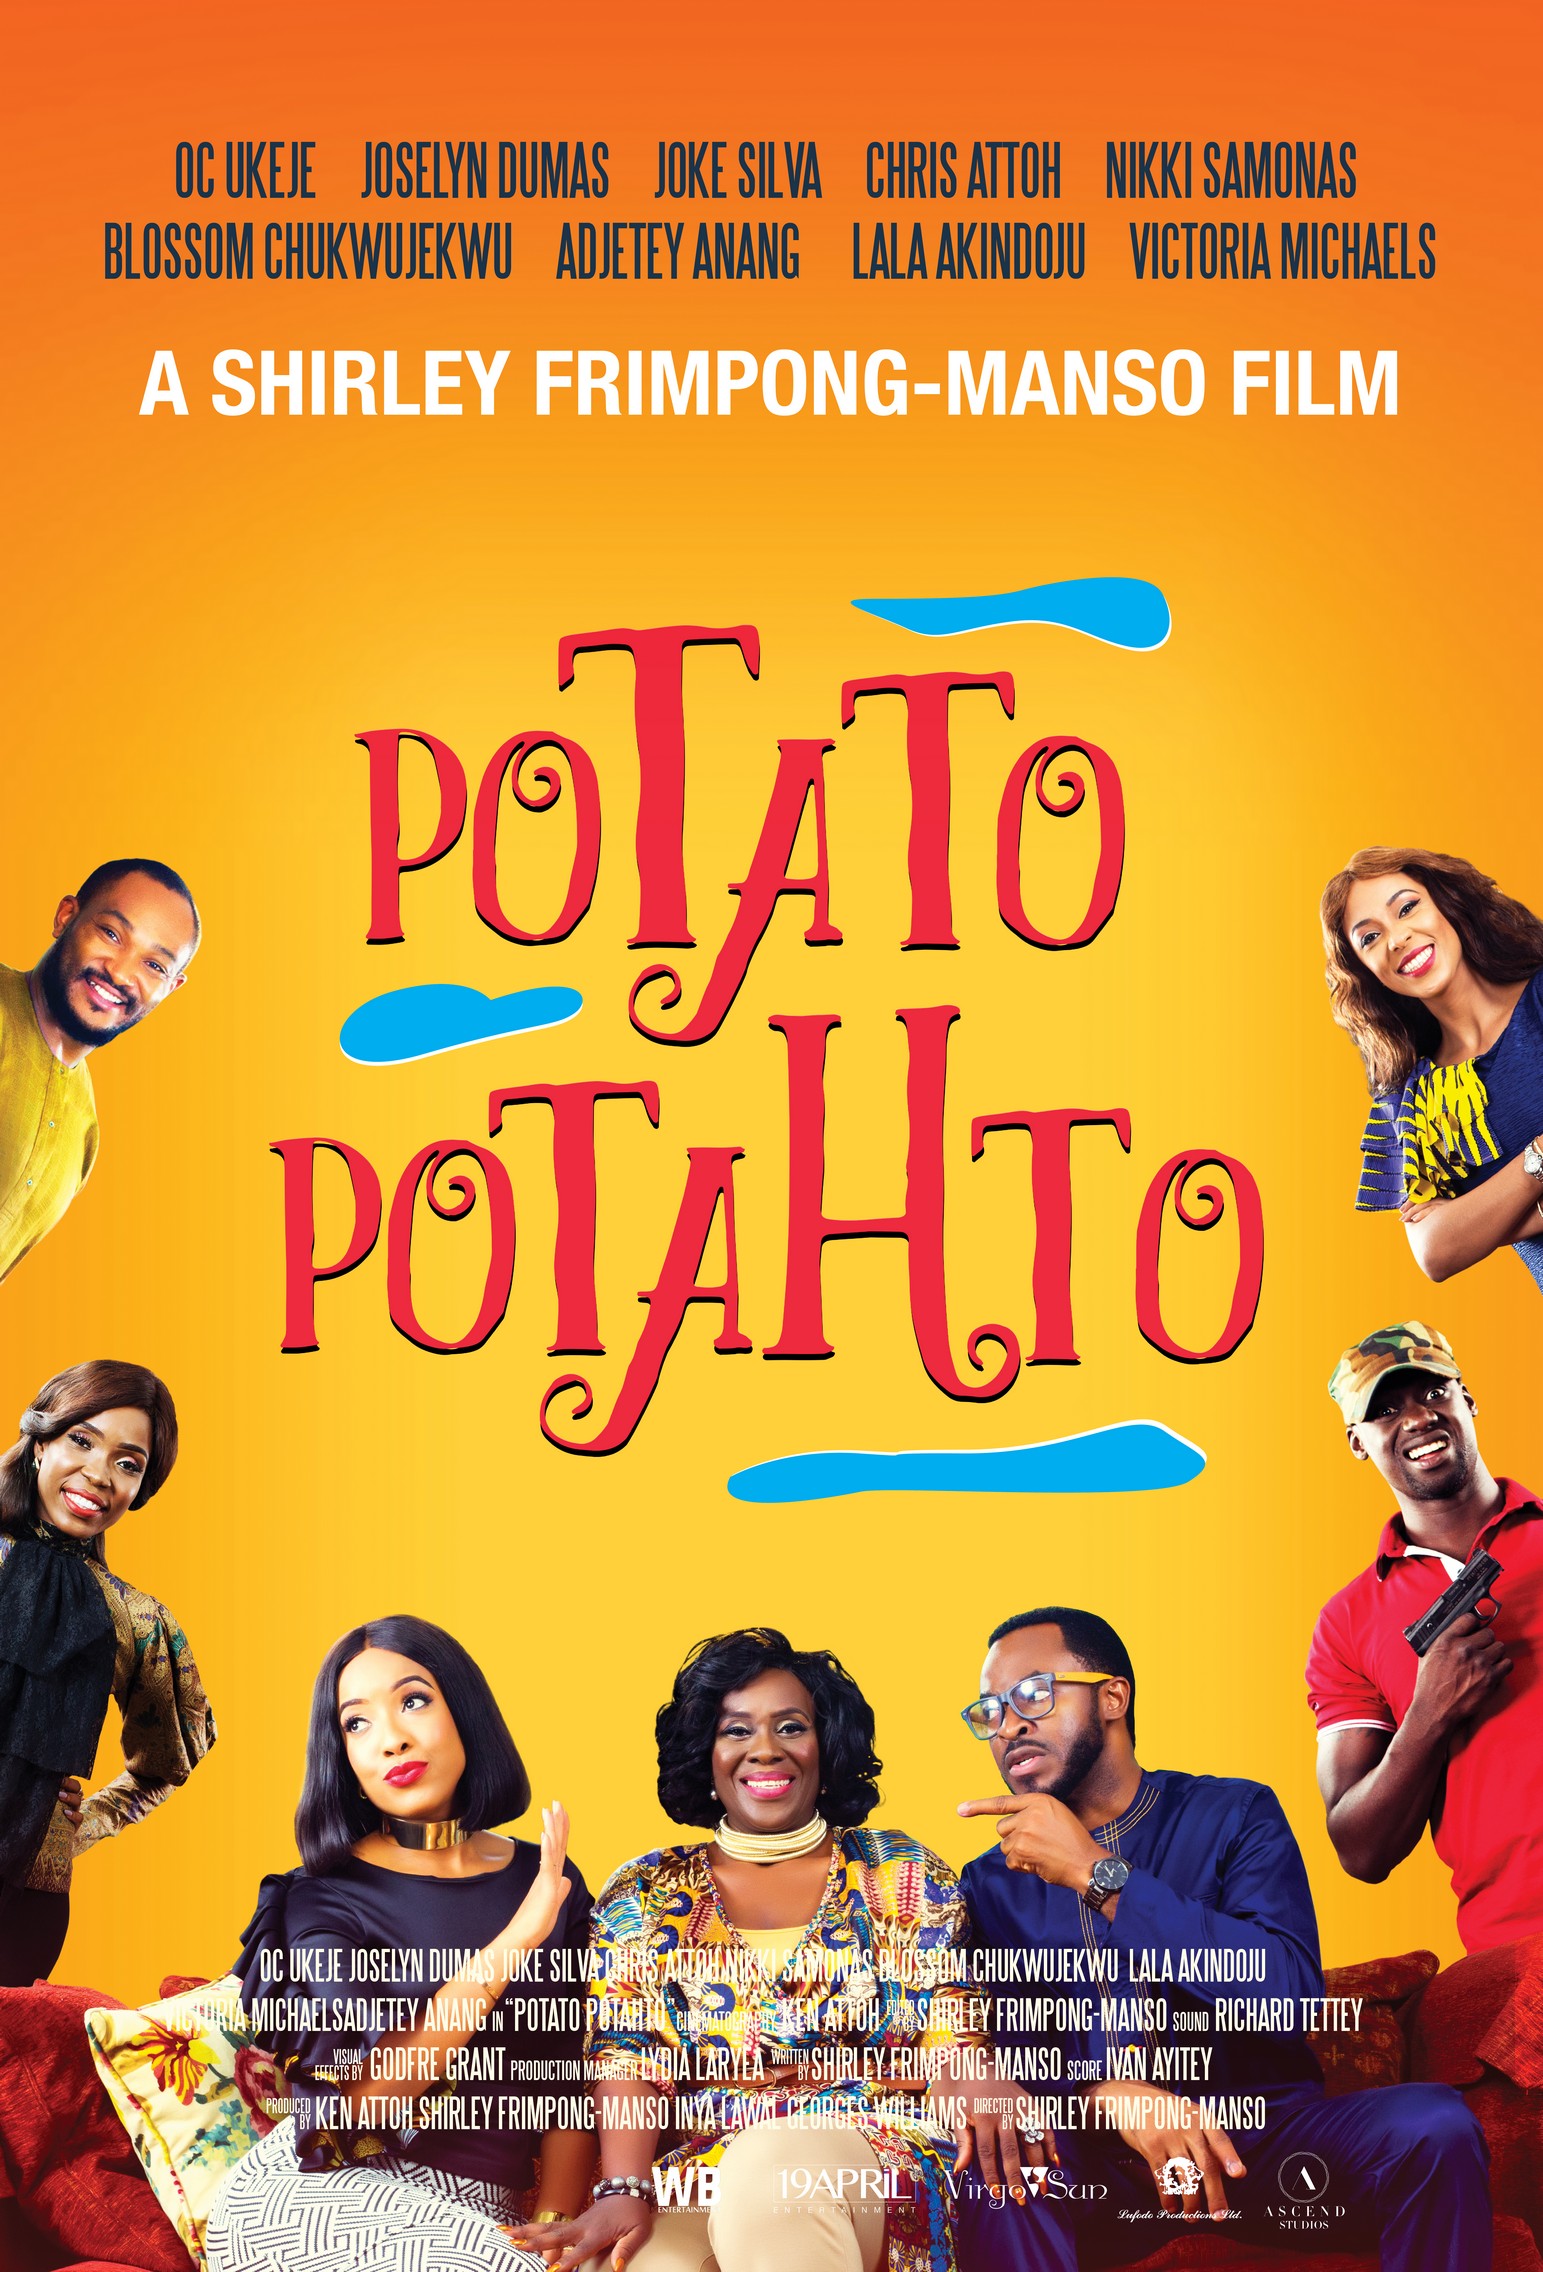 Potato Potahto 2017 Movie Poster